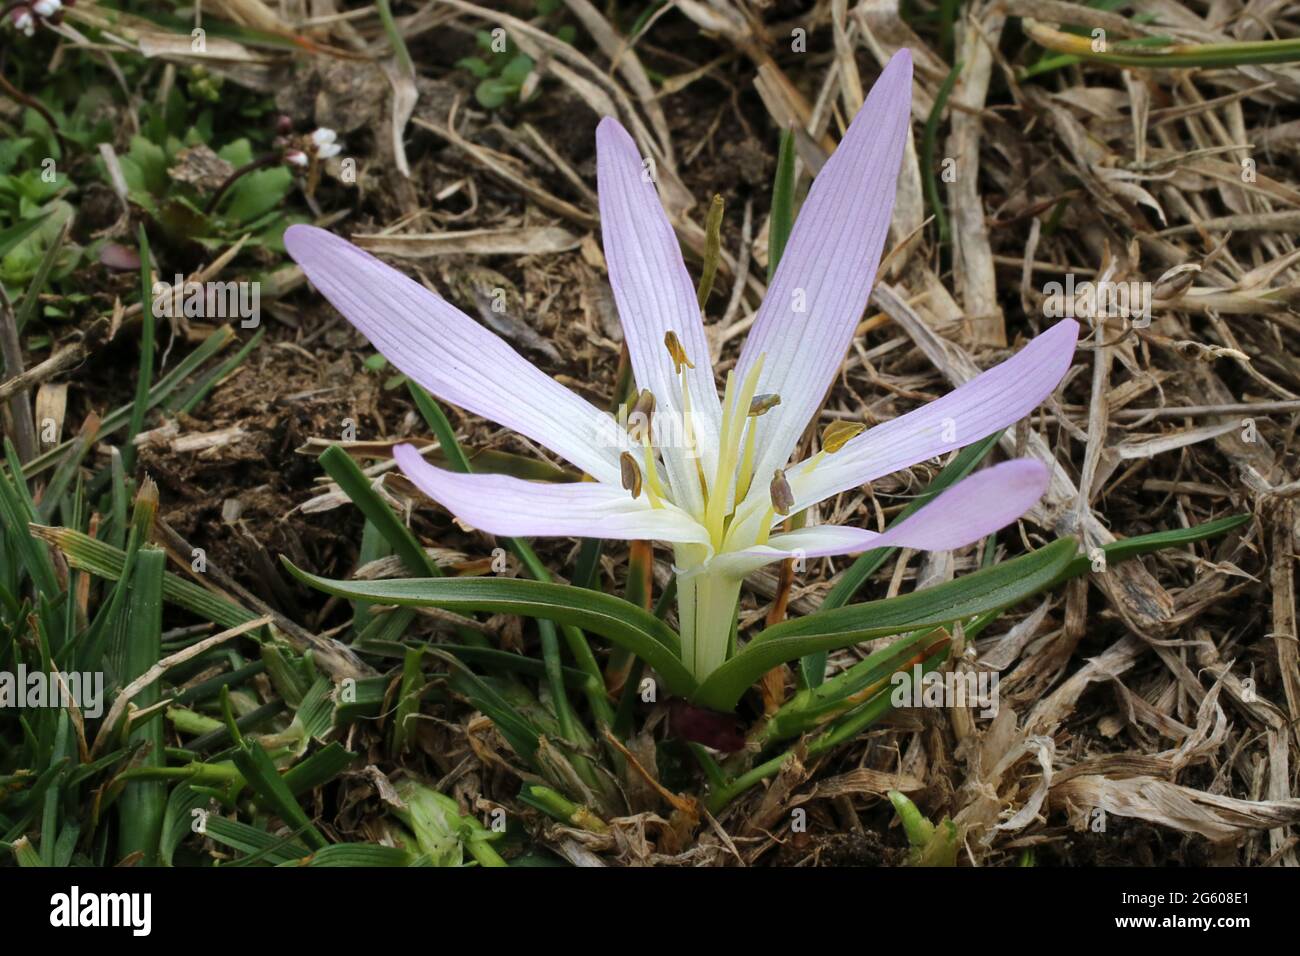 Merendera sobolifera, Colchicum soboliferum, Colchicaceae. Wild plant shot in summer. Stock Photo